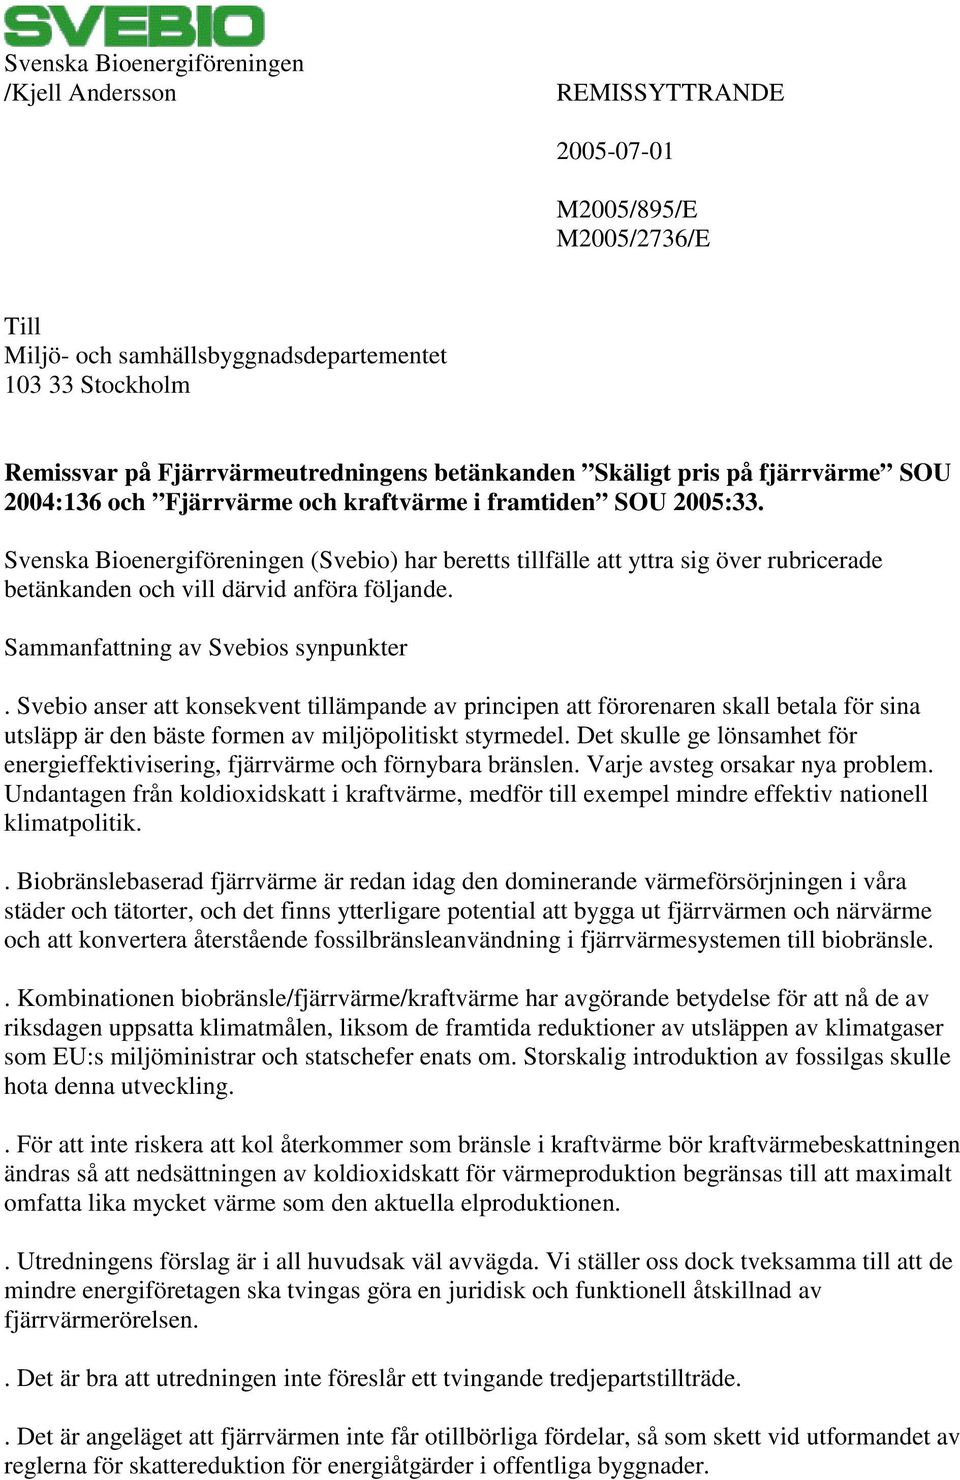 Svenska Bioenergiföreningen (Svebio) har beretts tillfälle att yttra sig över rubricerade betänkanden och vill därvid anföra följande. Sammanfattning av Svebios synpunkter.